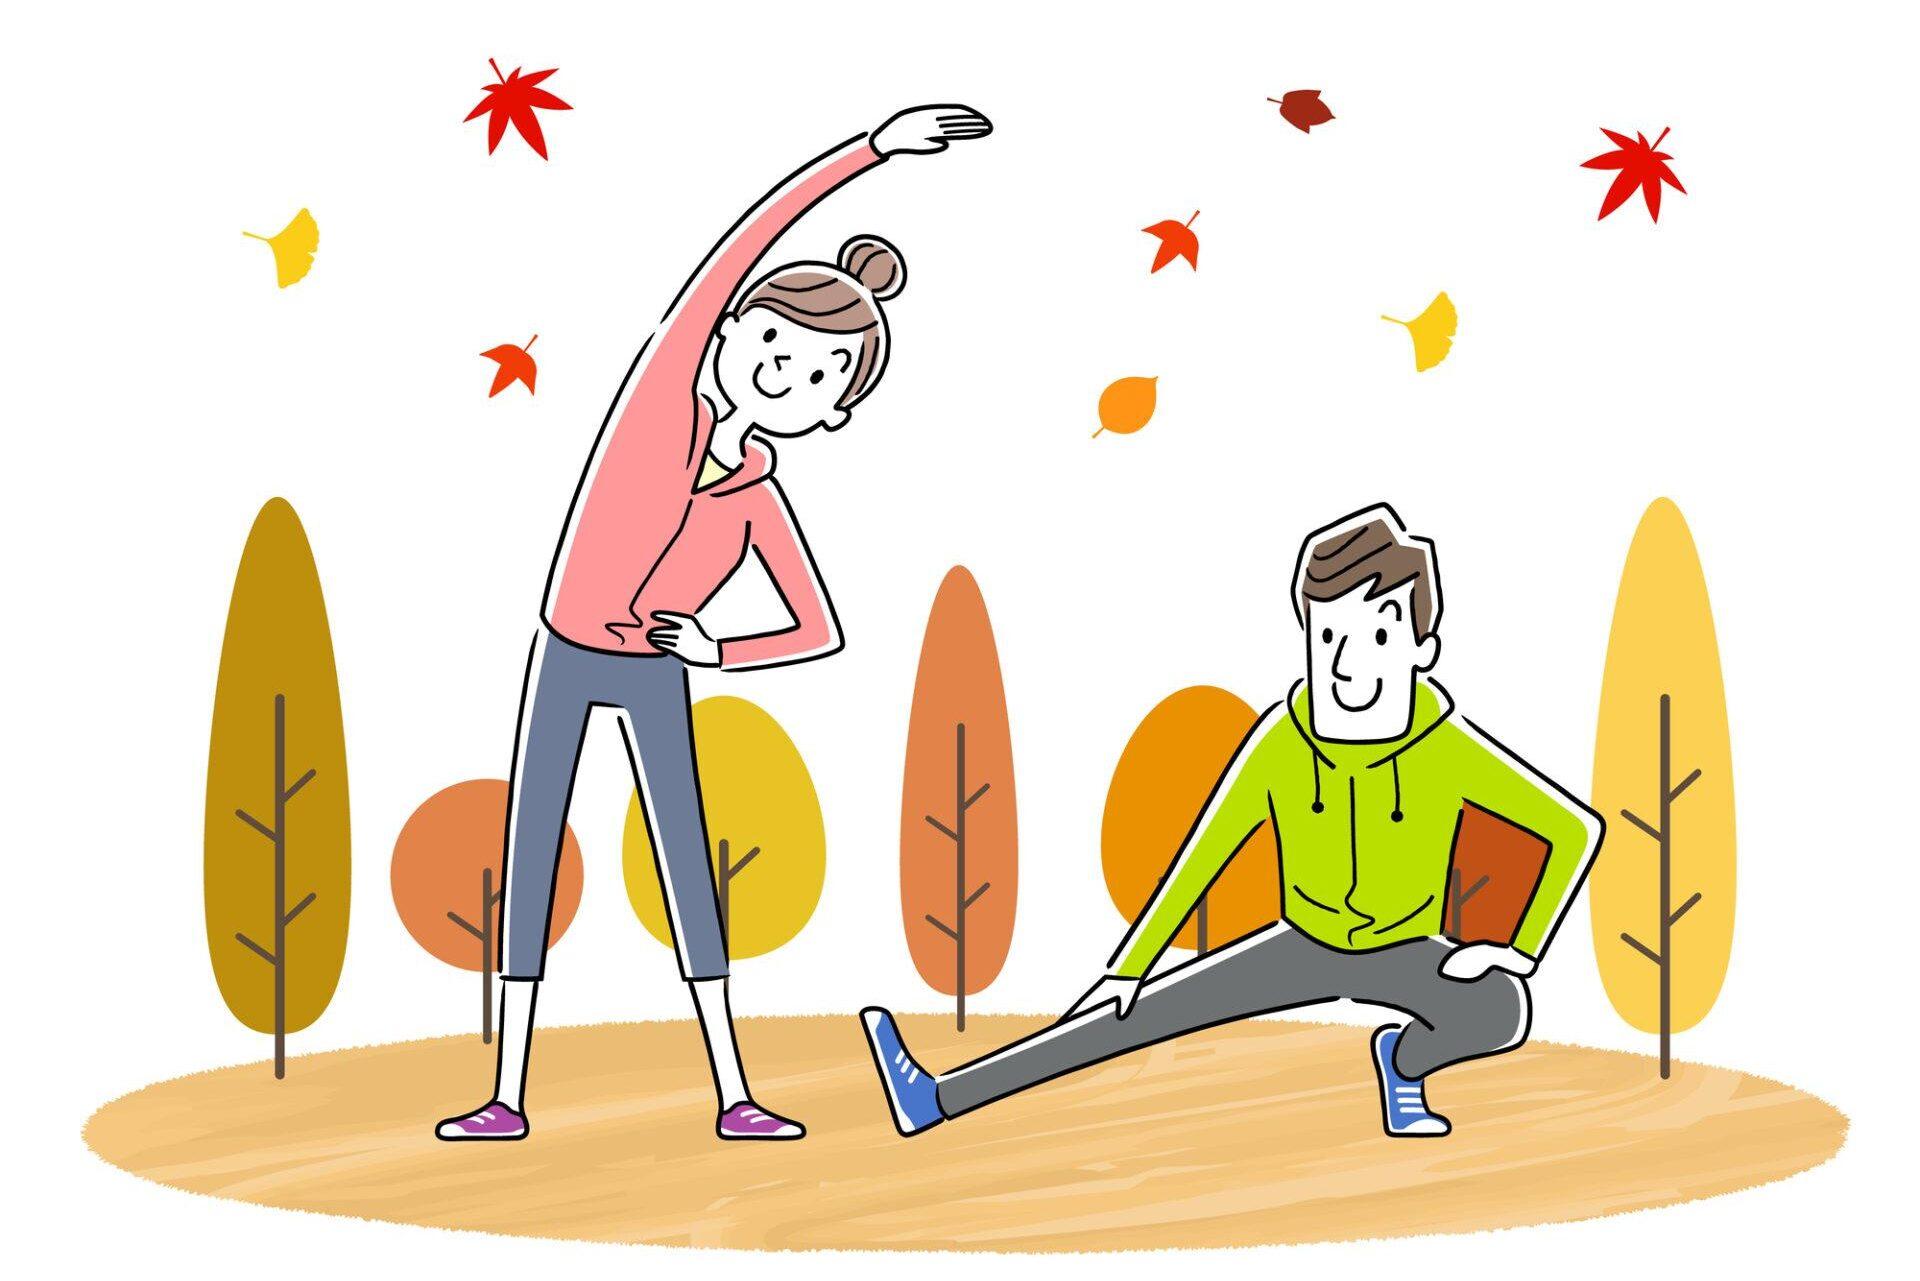 スポーツの秋に始めたいシニア向け運動習慣７選！中高年の健康増進につながるメニューとは